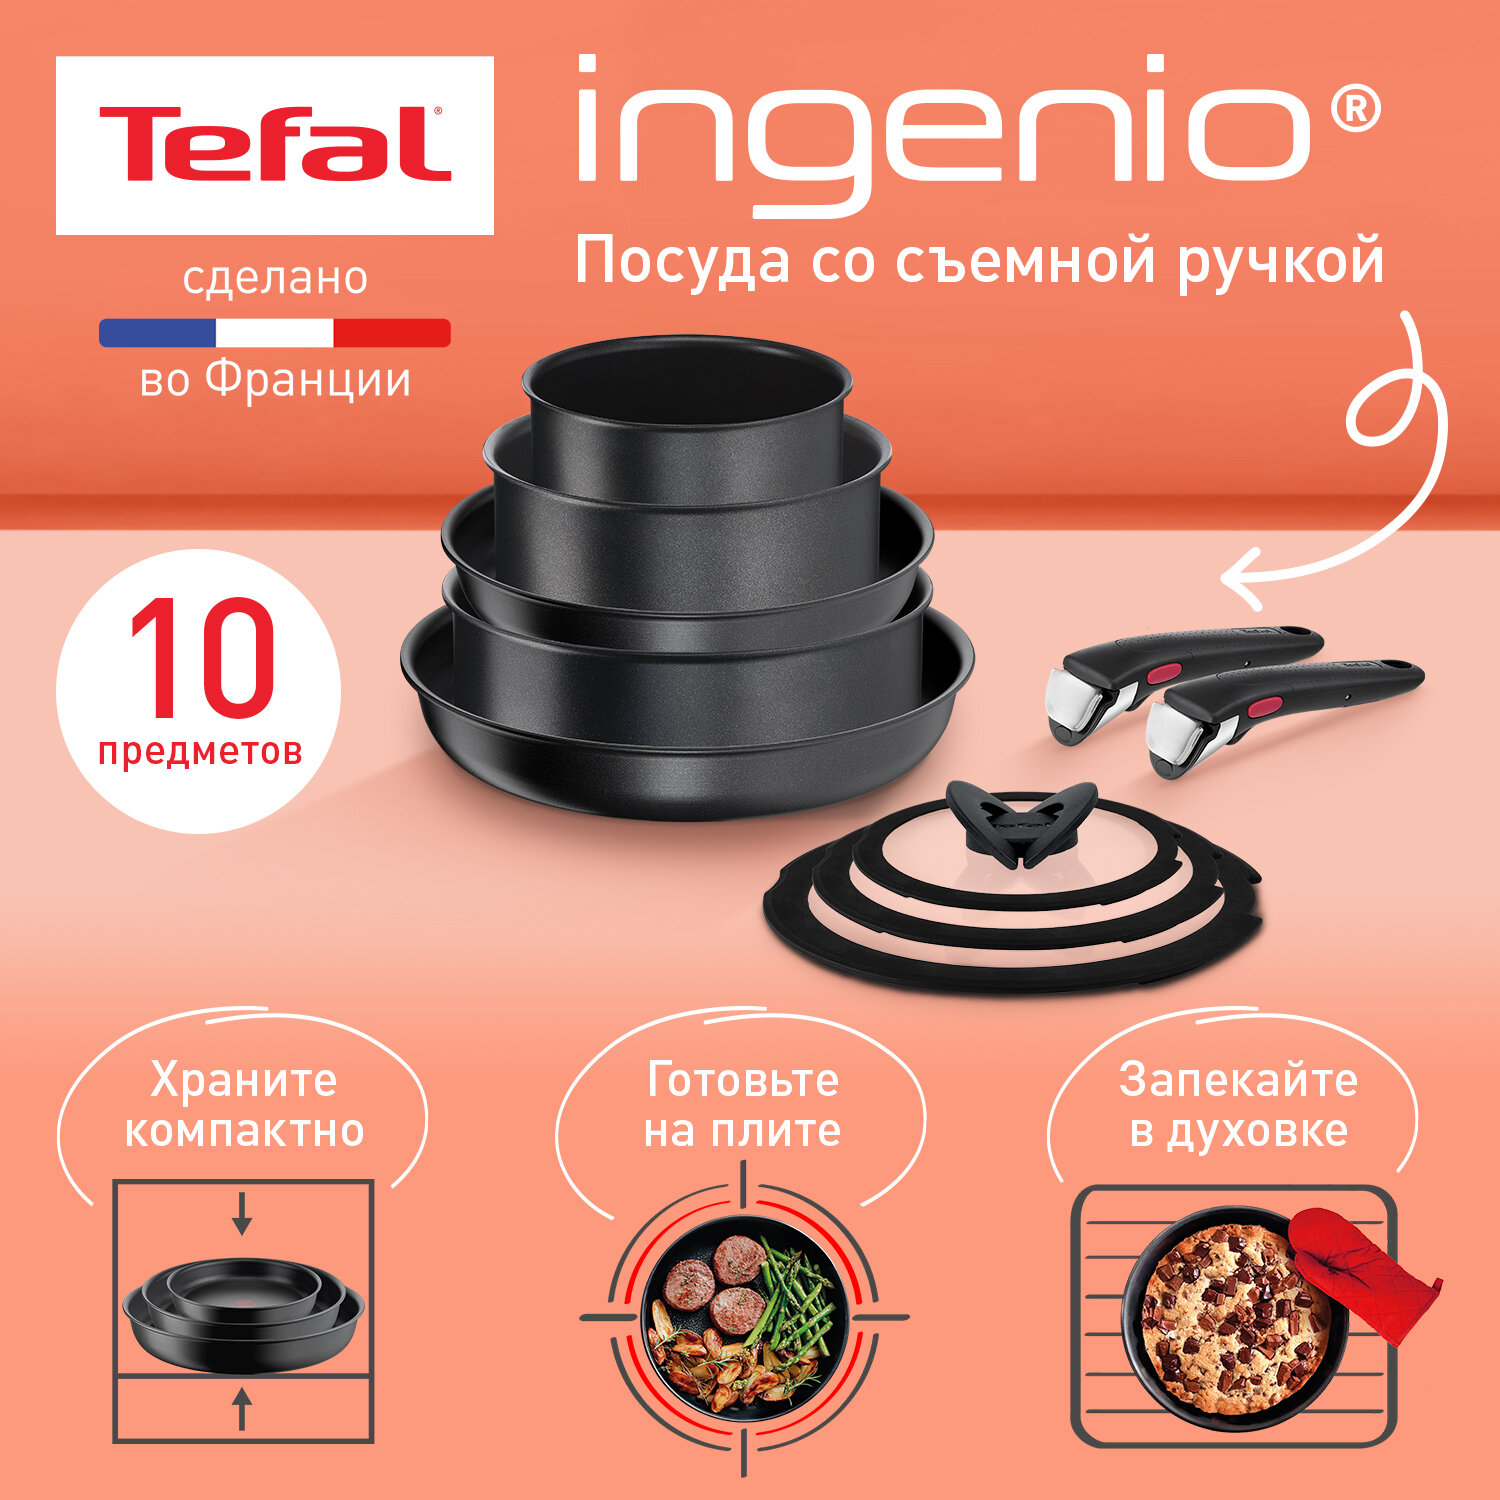 Набор посуды со съемной ручкой Tefal Ingenio Daily Chef Black L L7629142, 10 предметов, подходит для индукции, сделан во Франции